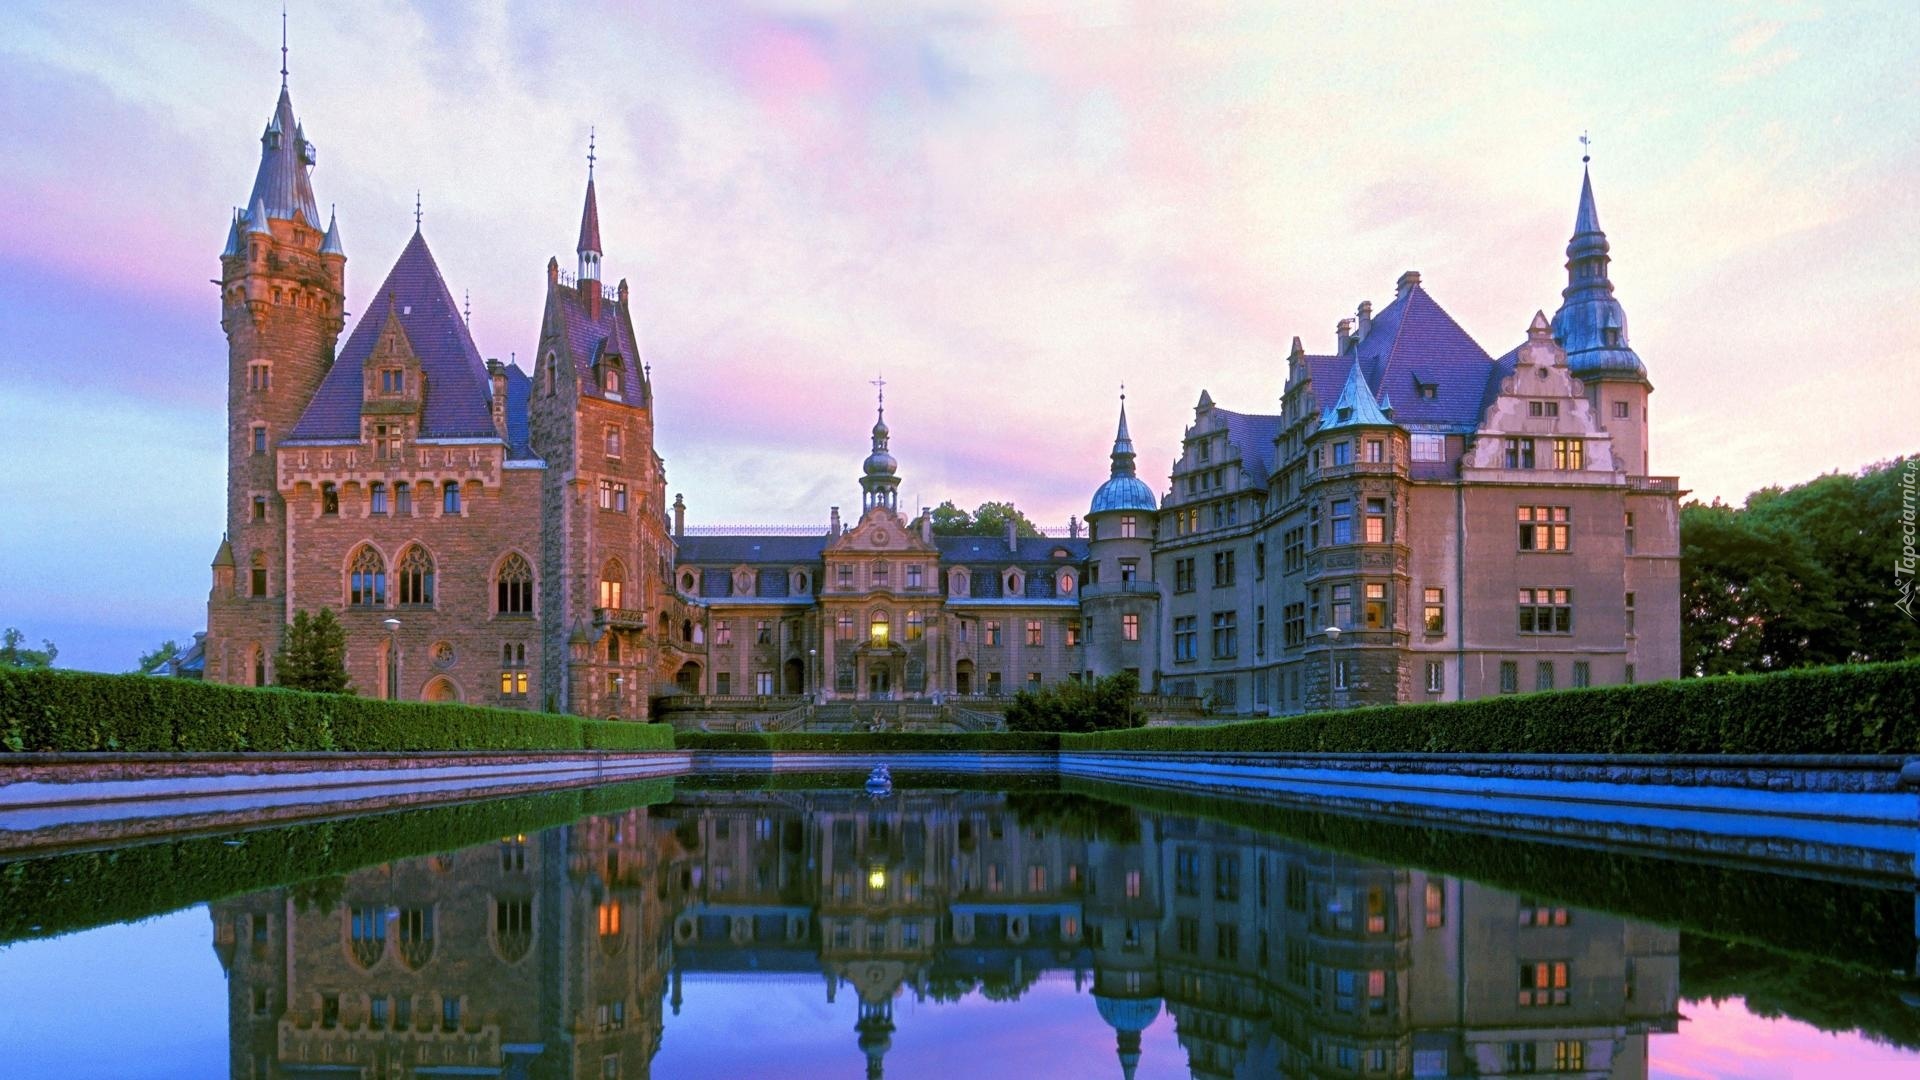 Zamek w Mosznej, Pałac, Moszna, Polska